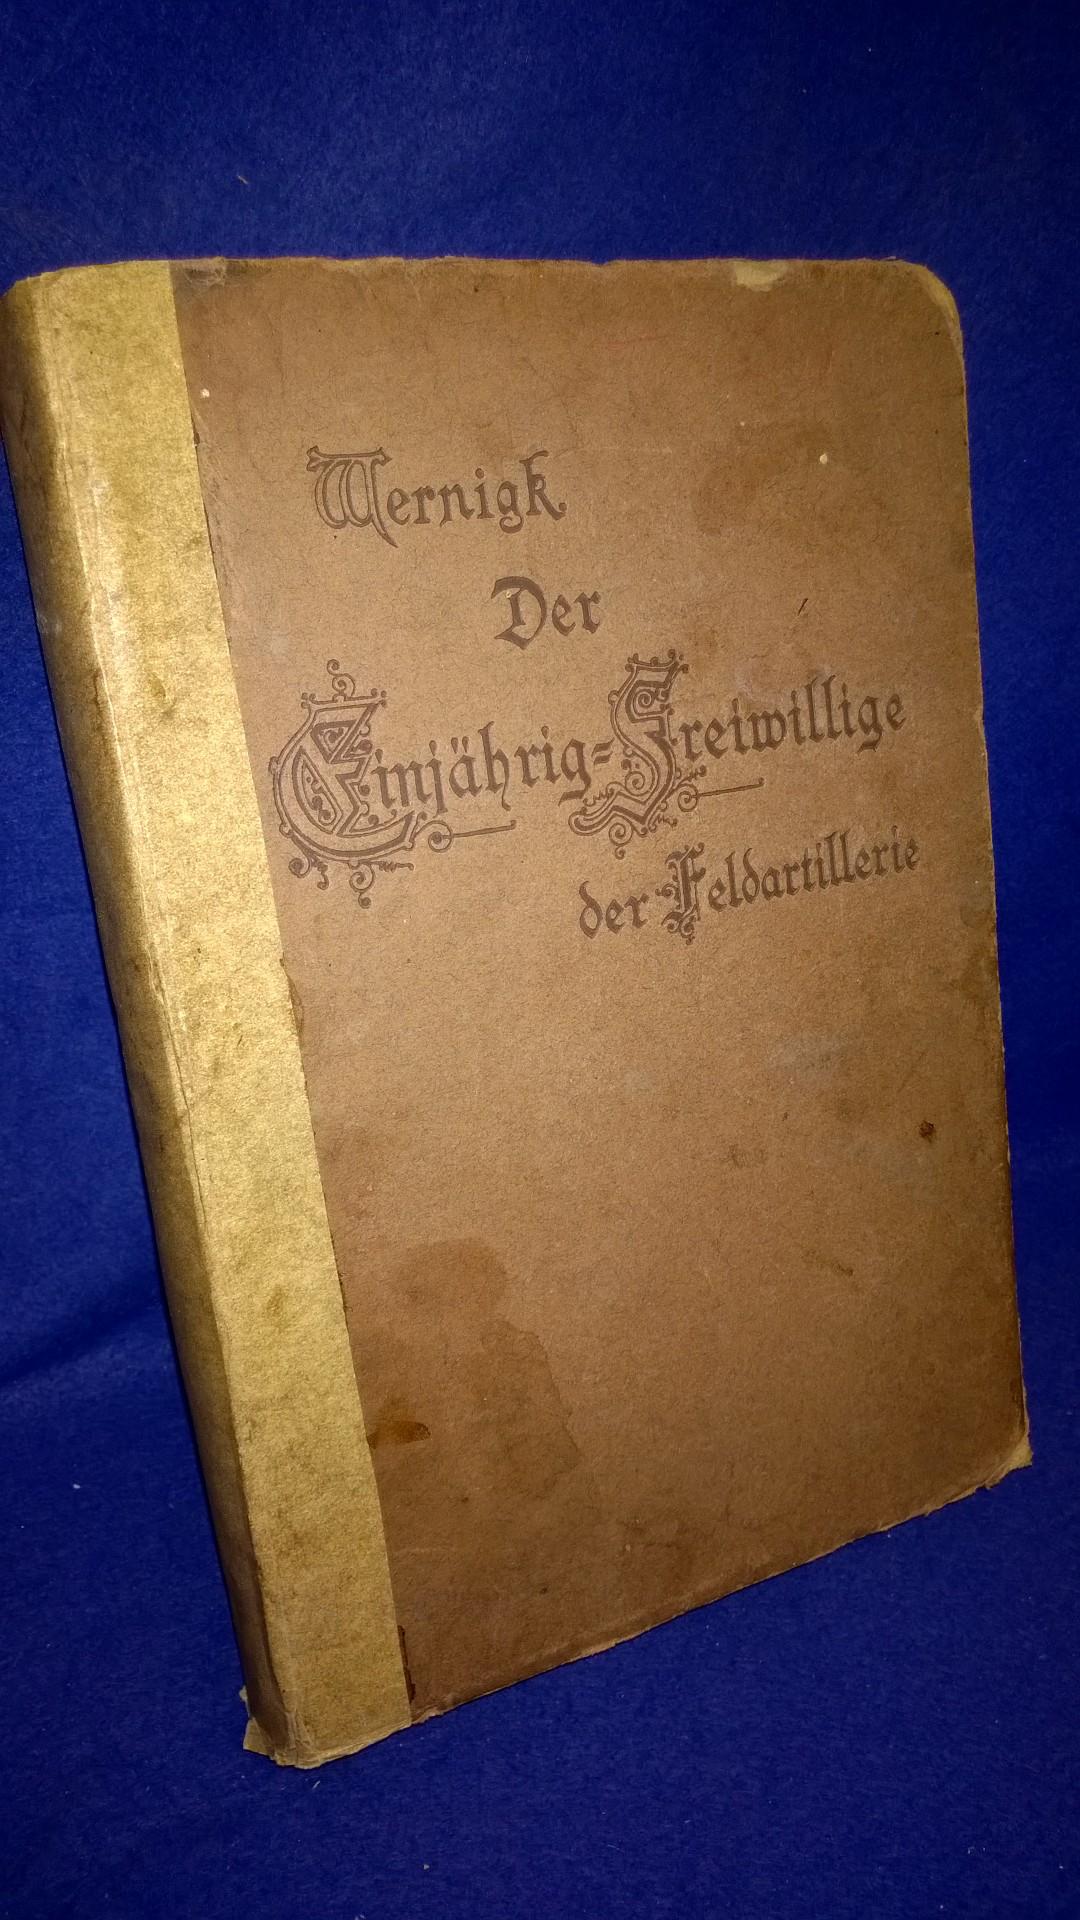 Wernigks Handbuch für die Einjährig-Freiwilligen Offizier-Aspiranten und die Offiziere des Beurlaubtenstandes der Feldartillerie. - Kriegsausgabe 1918 -.